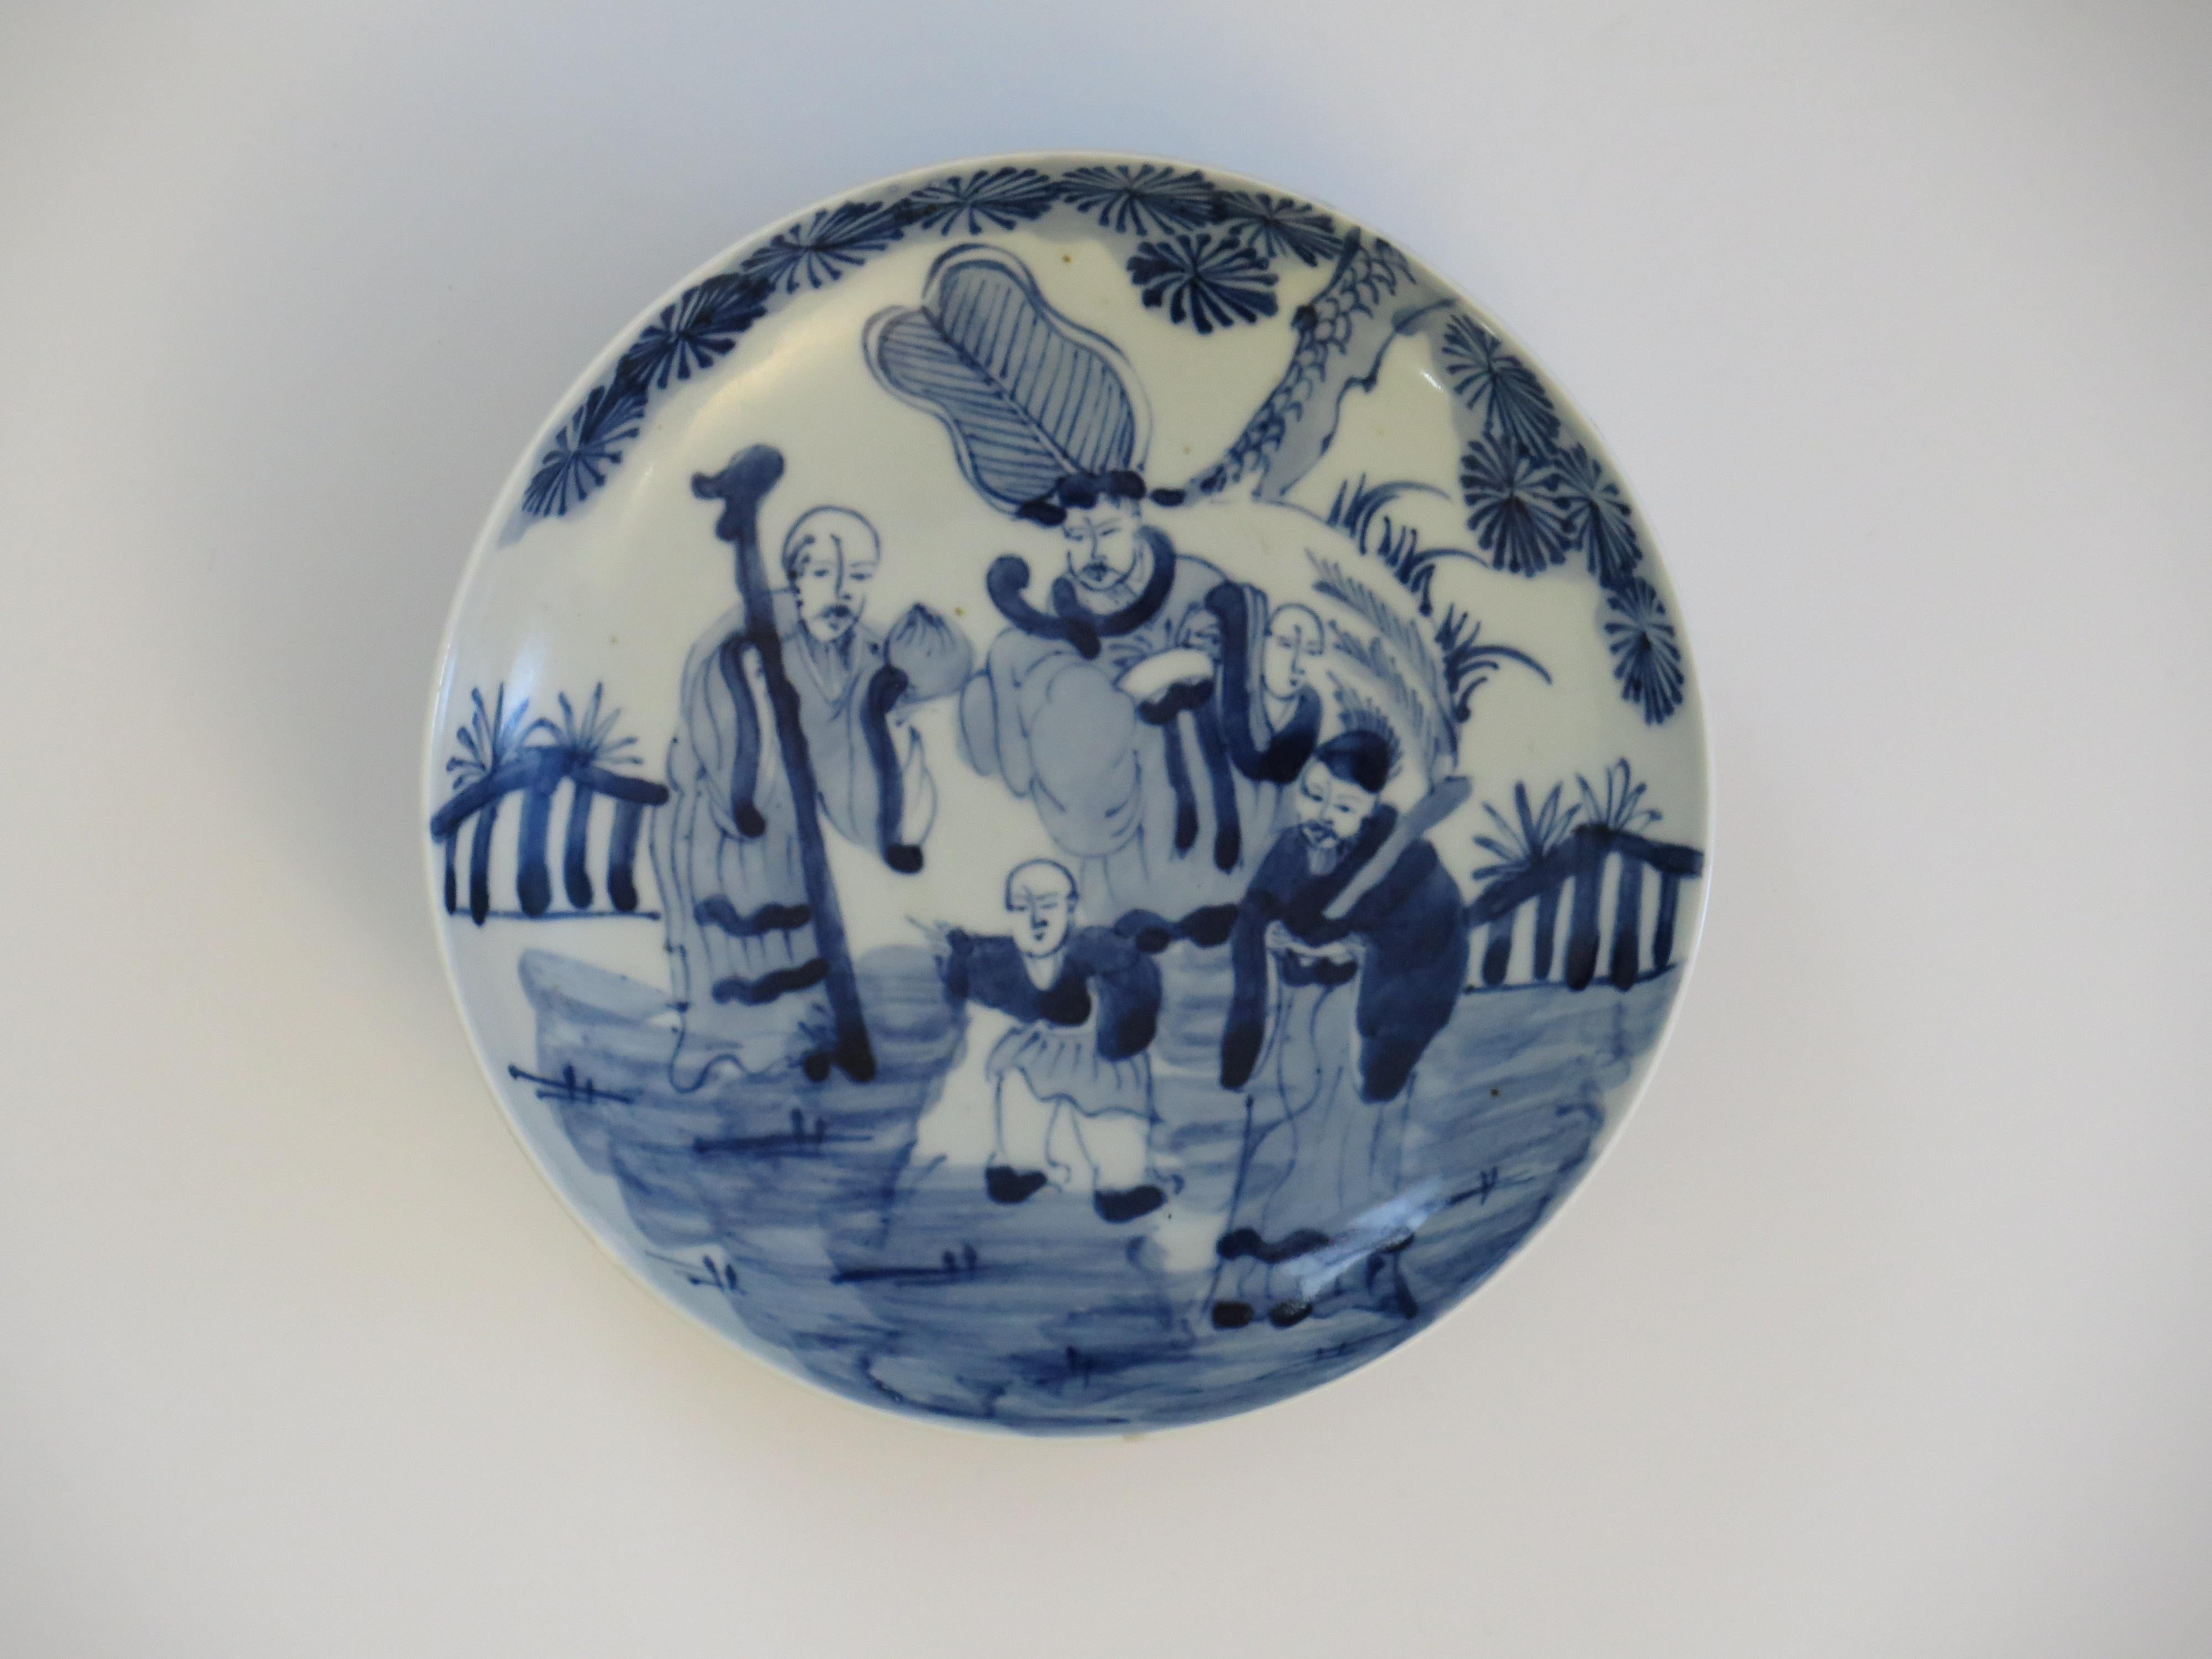 Il s'agit d'un plat en porcelaine d'exportation chinoise peint à la main, que nous datons de la seconde moitié du XVIIIe siècle, période Qing, Qianlong, vers 1770, ou peut-être plus tôt.

Le plat est circulaire et bien empoté, avec des côtés